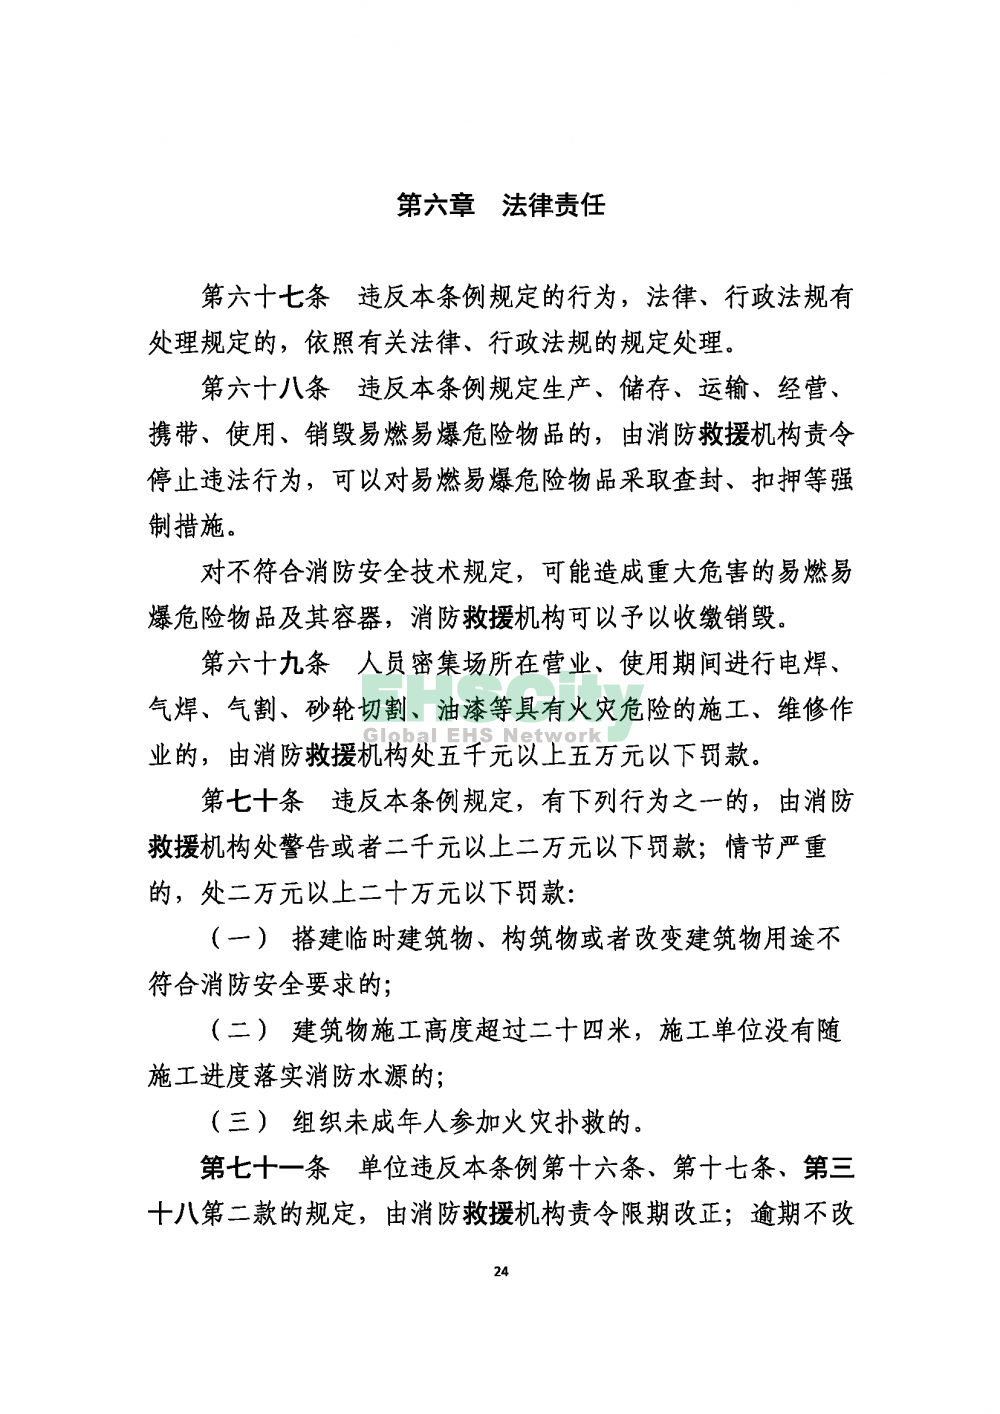 2020版上海消防条例_页面_24